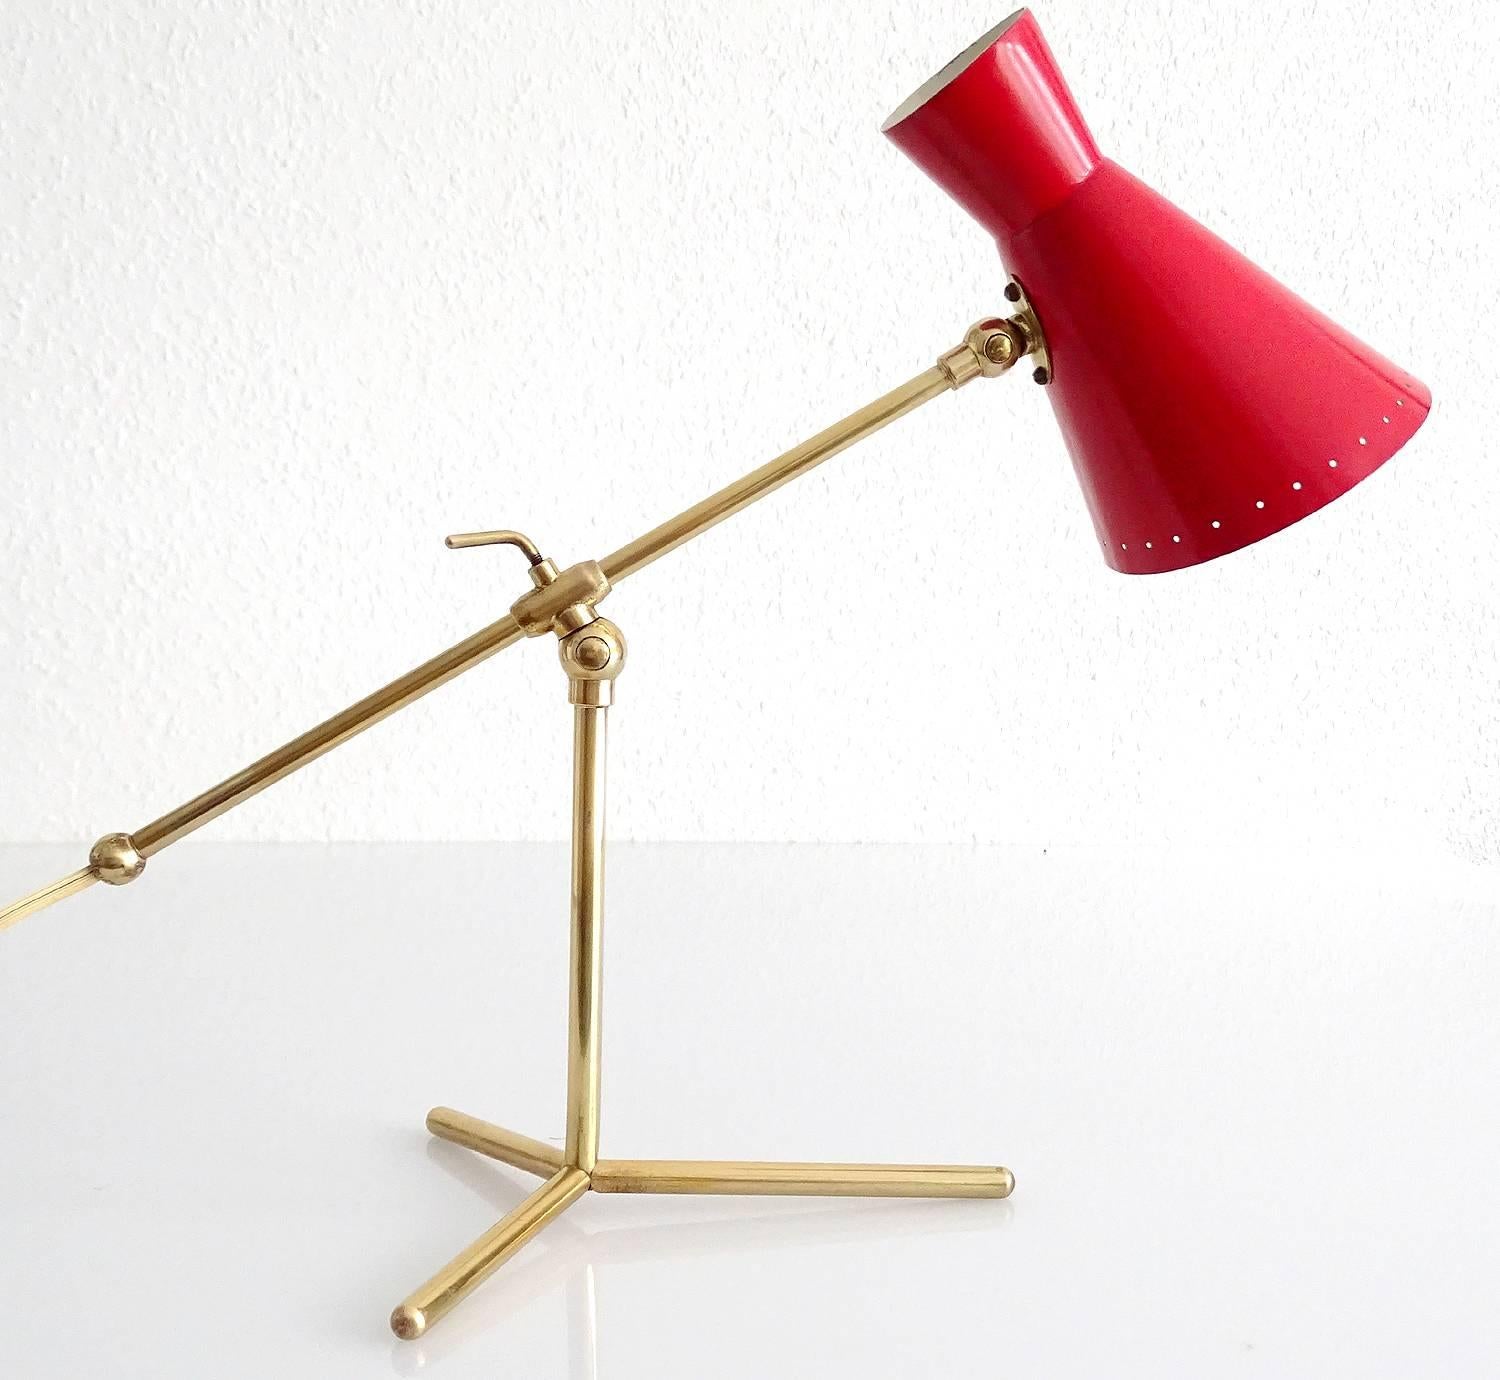 Mid-Century Modern Stilnovo Design Desk Lamp Brass Modernist Design 50s Mid Century Modern Italian